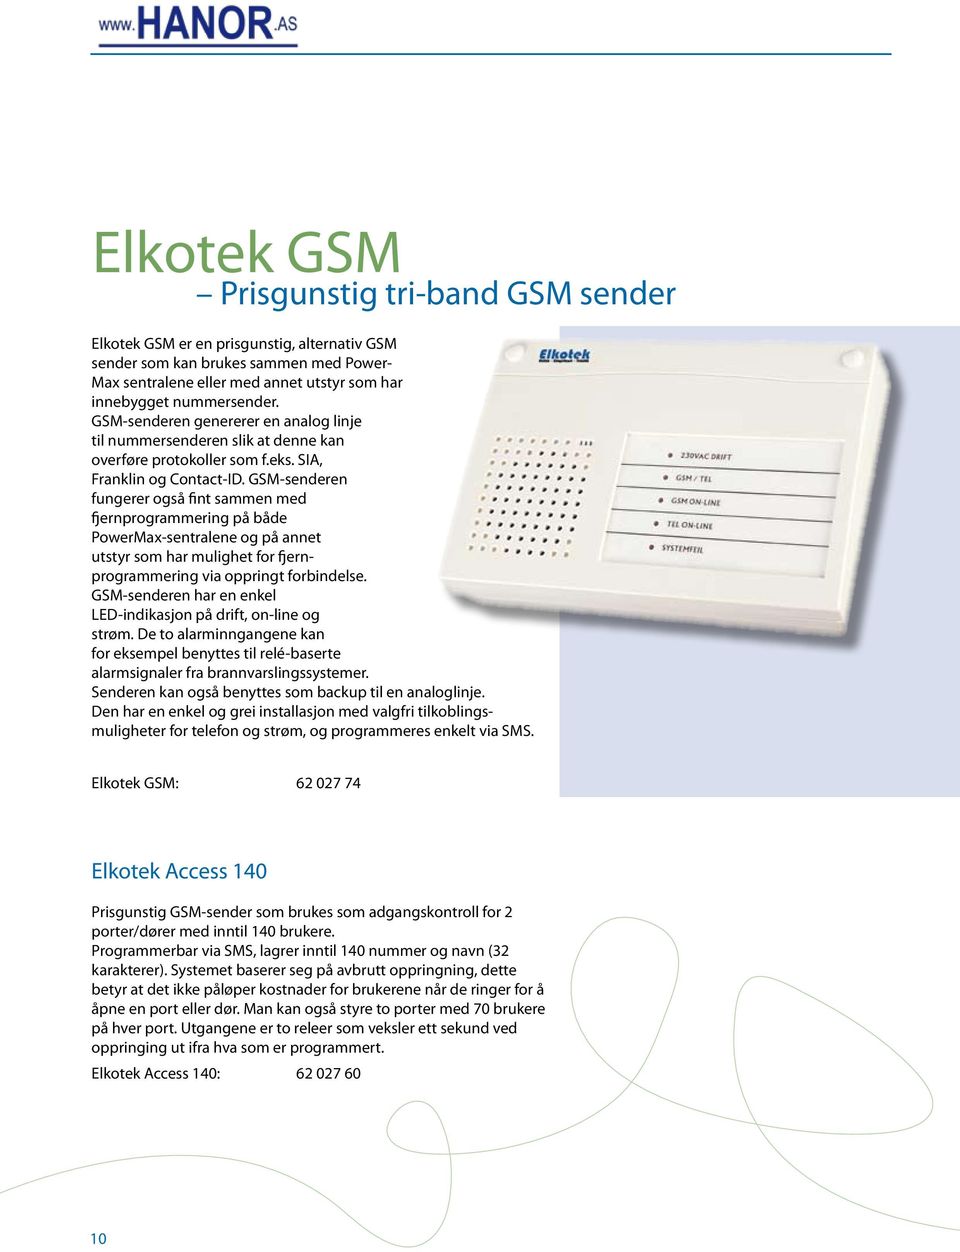 GSM-senderen fungerer også fint sammen med fjernprogrammering på både PowerMax-sentralene og på annet utstyr som har mulighet for fjernprogrammering via oppringt forbindelse.